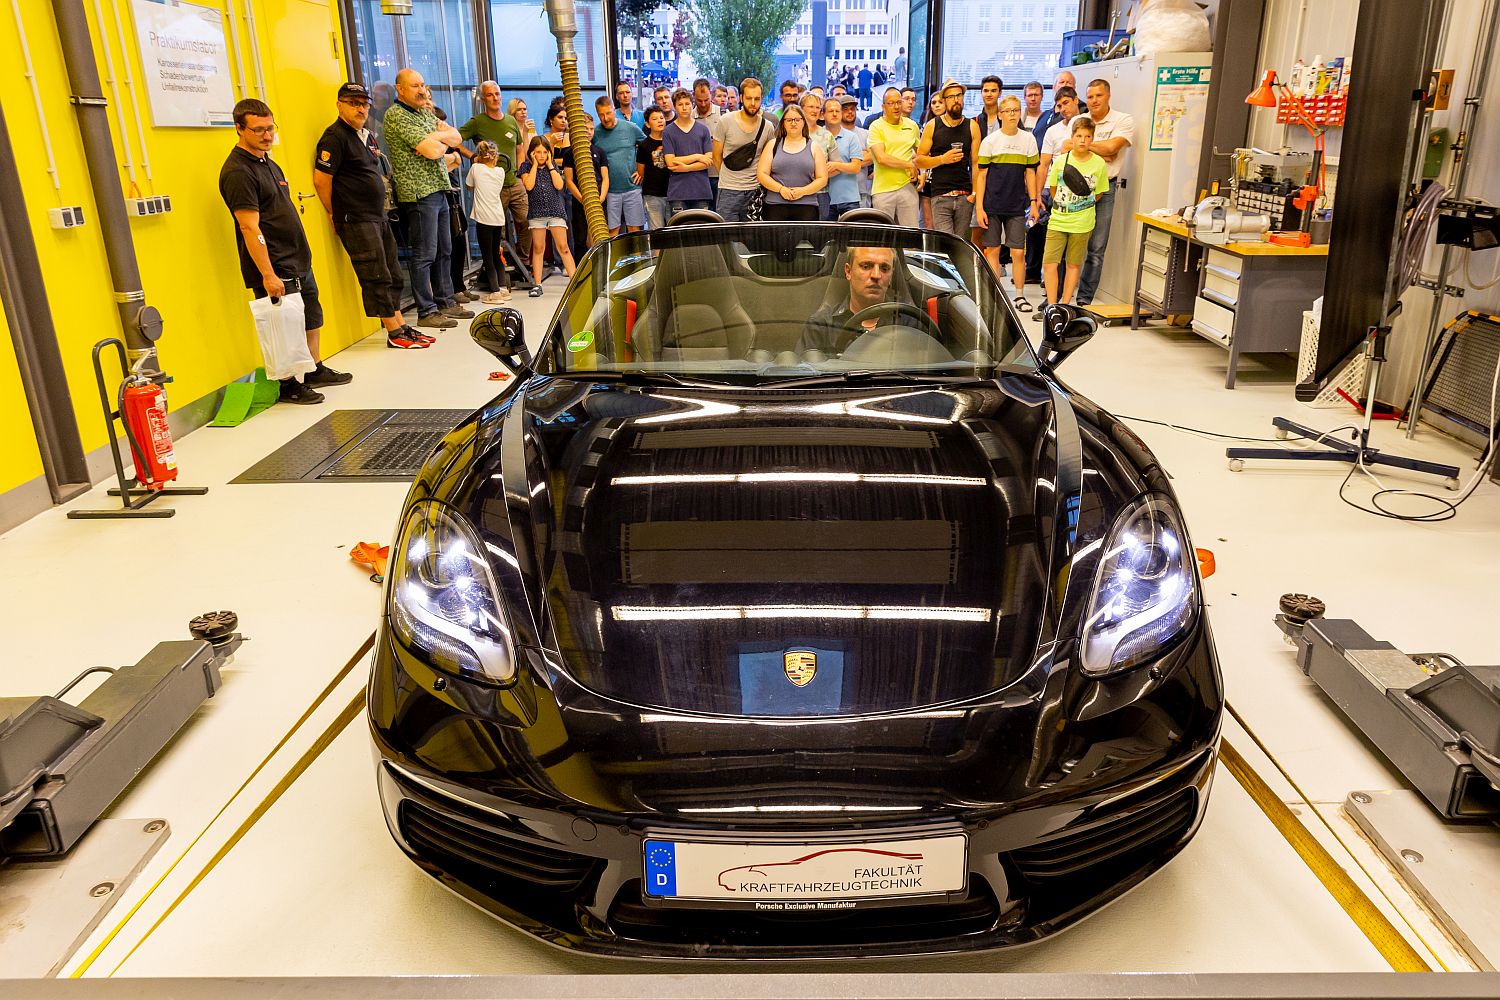 Foto: Personen in einem Laborbereich an einer automobiltechnischen Prüfanlage auf der ein Porsche steht (Foto: Helge Gerischer)